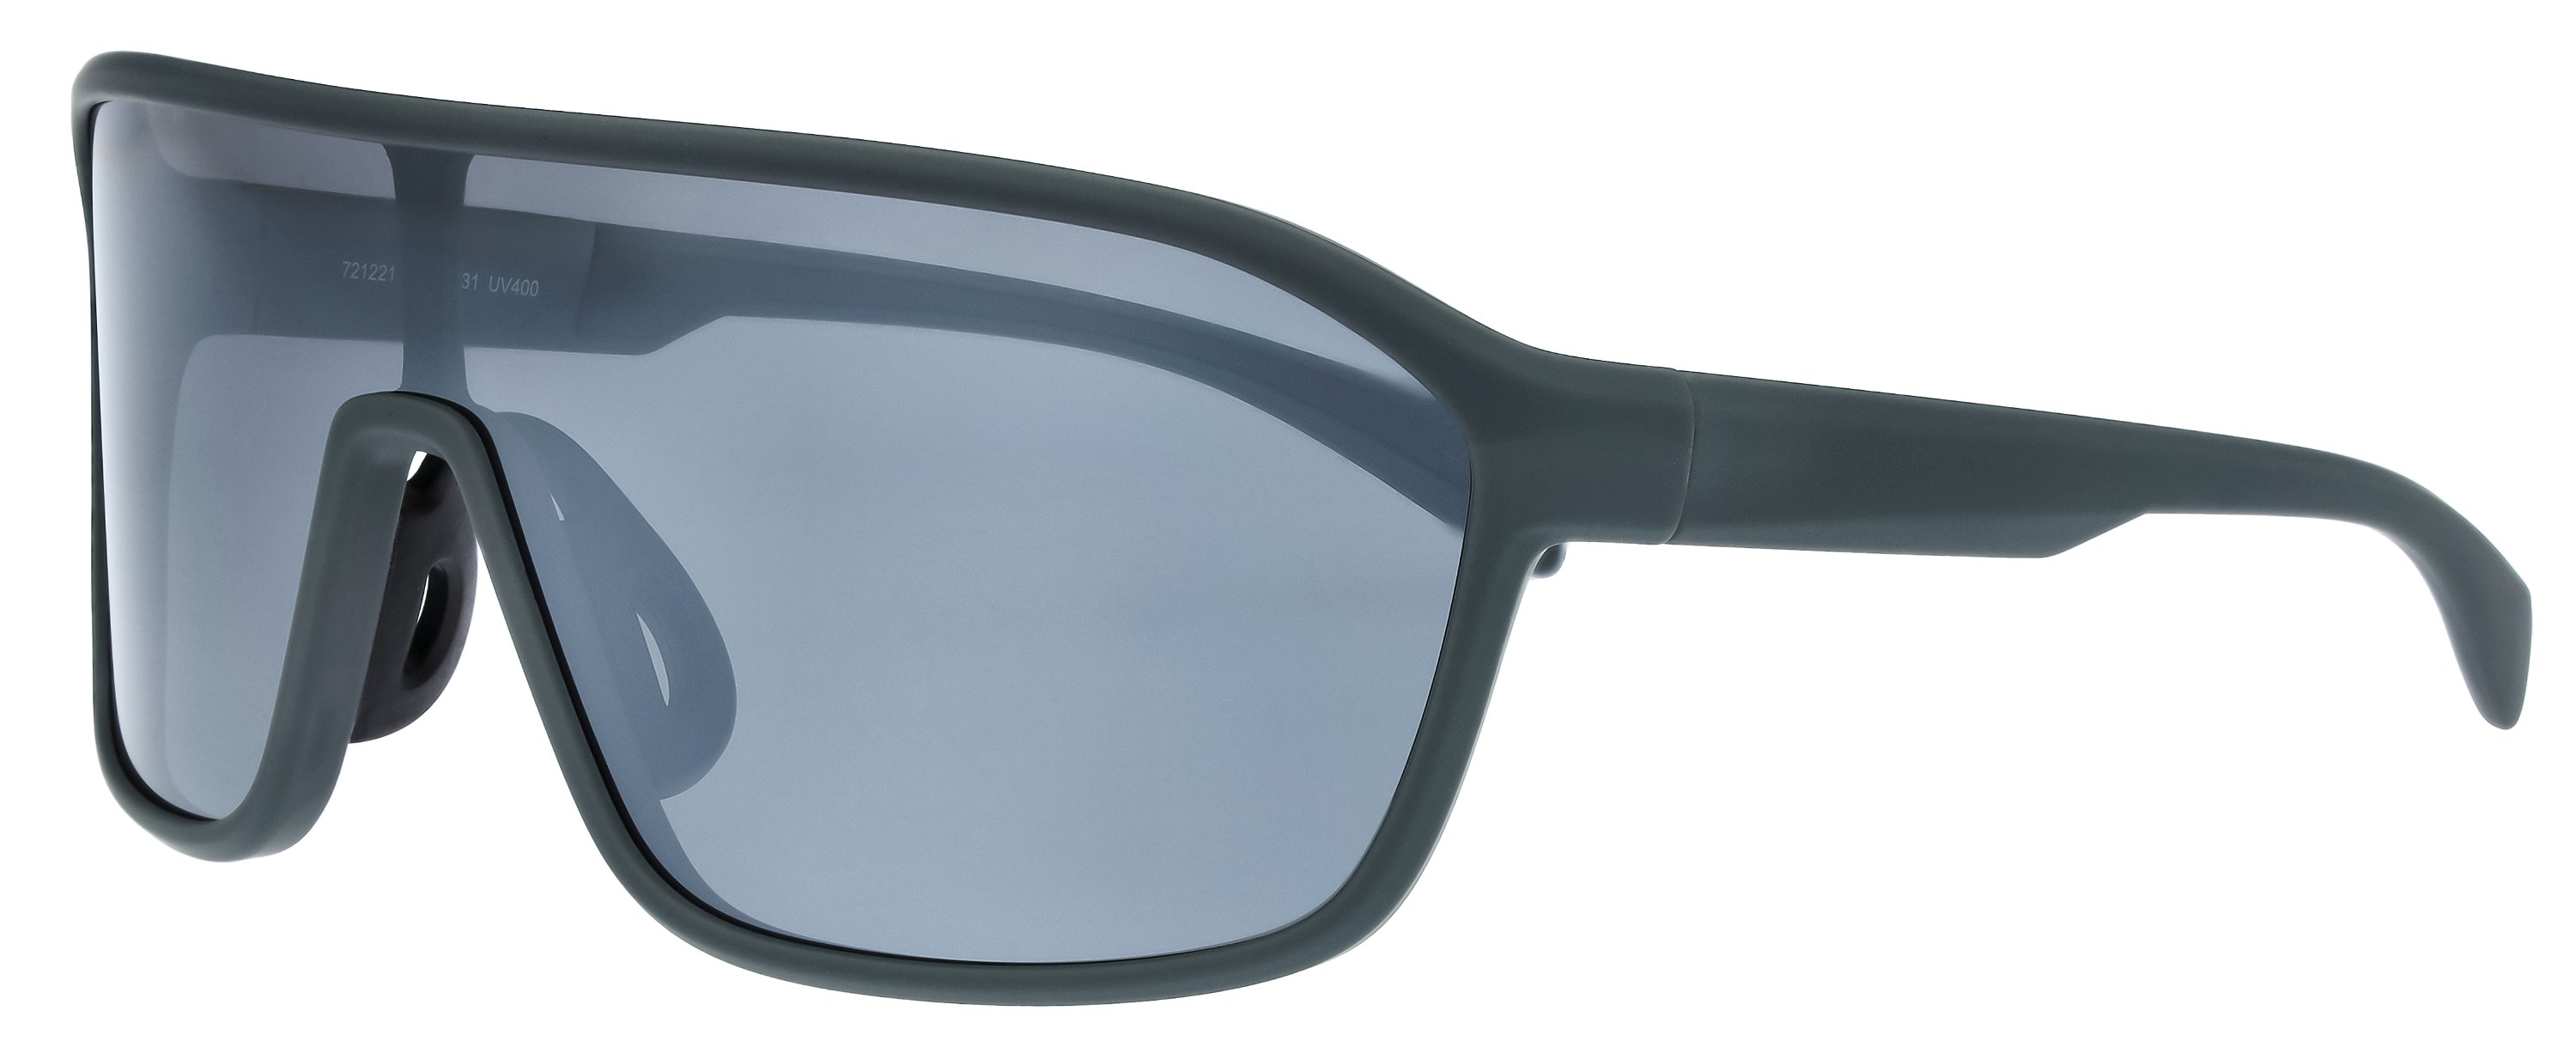 Das Bild zeigt die Sonnenbrille 721221 von der Marke Abele Optik in grau.